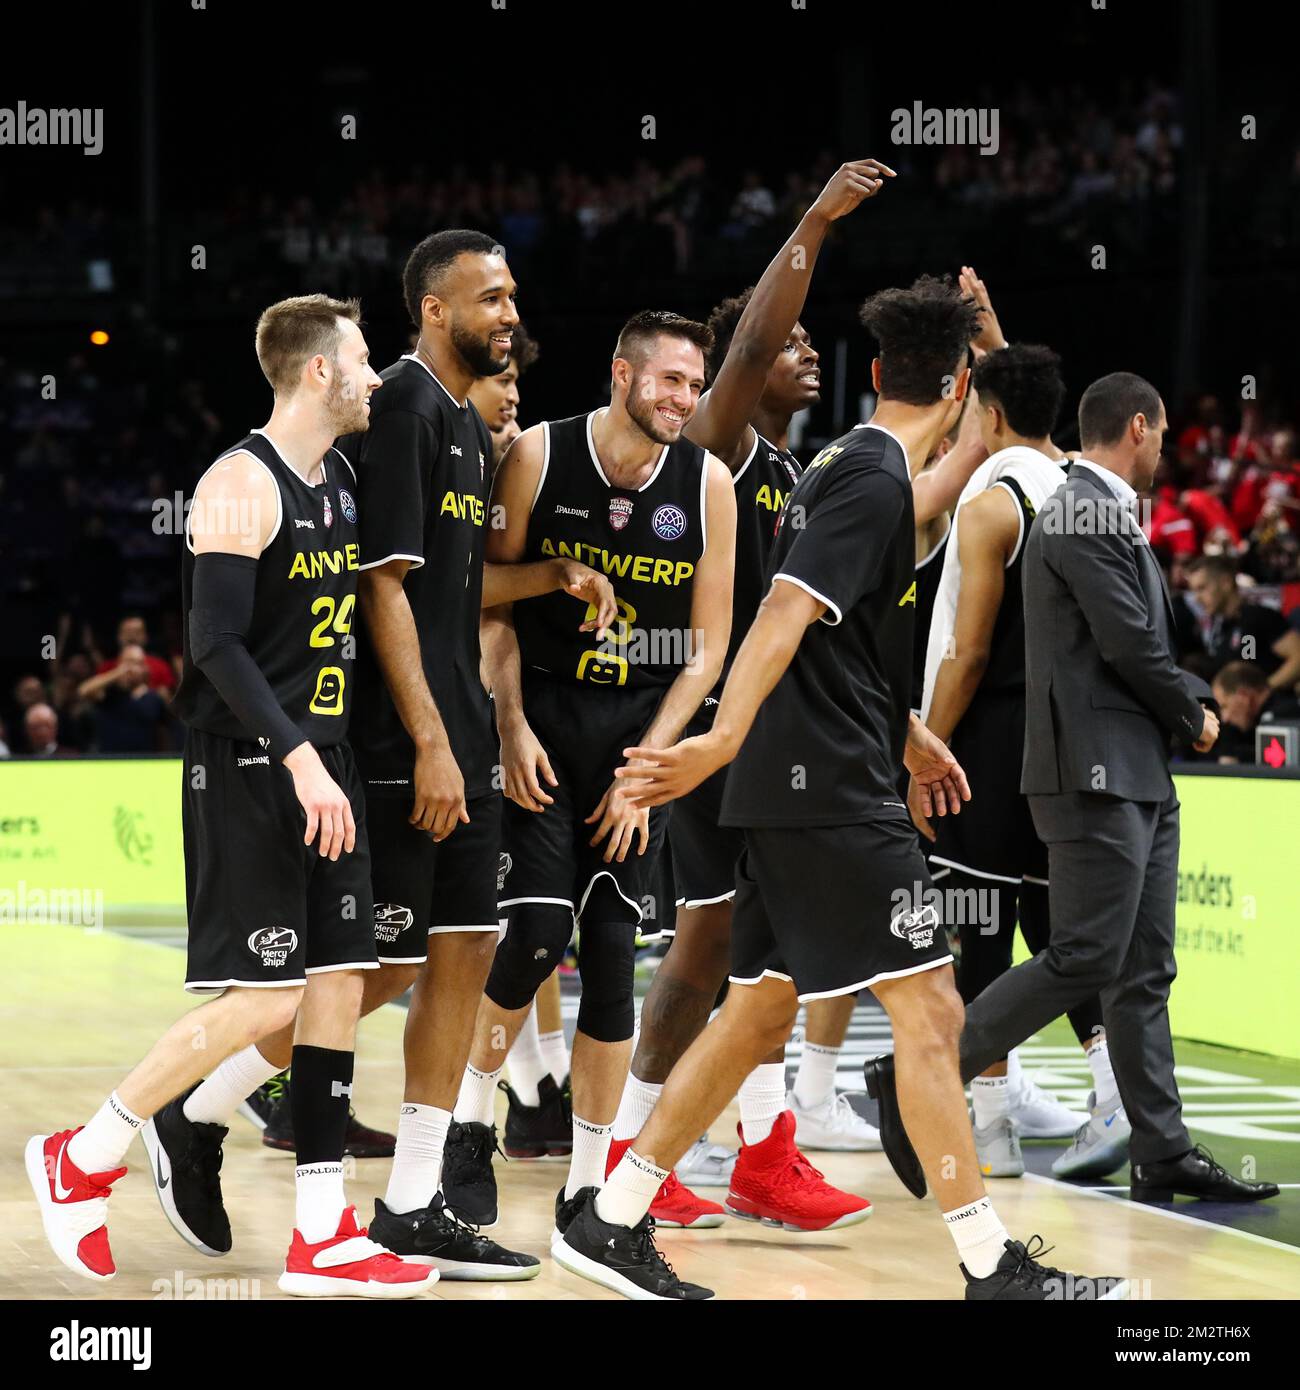 Les joueurs d'Anvers célèbrent lors d'un match de basket-ball entre Anvers Giants et l'équipe allemande Brose Bamberg, le match pour la troisième place de la 'finale quatre' de la Ligue des champions hommes de basket-ball, dimanche 05 mai 2019 à Anvers. BELGA PHOTO DAVID PINTENS Banque D'Images